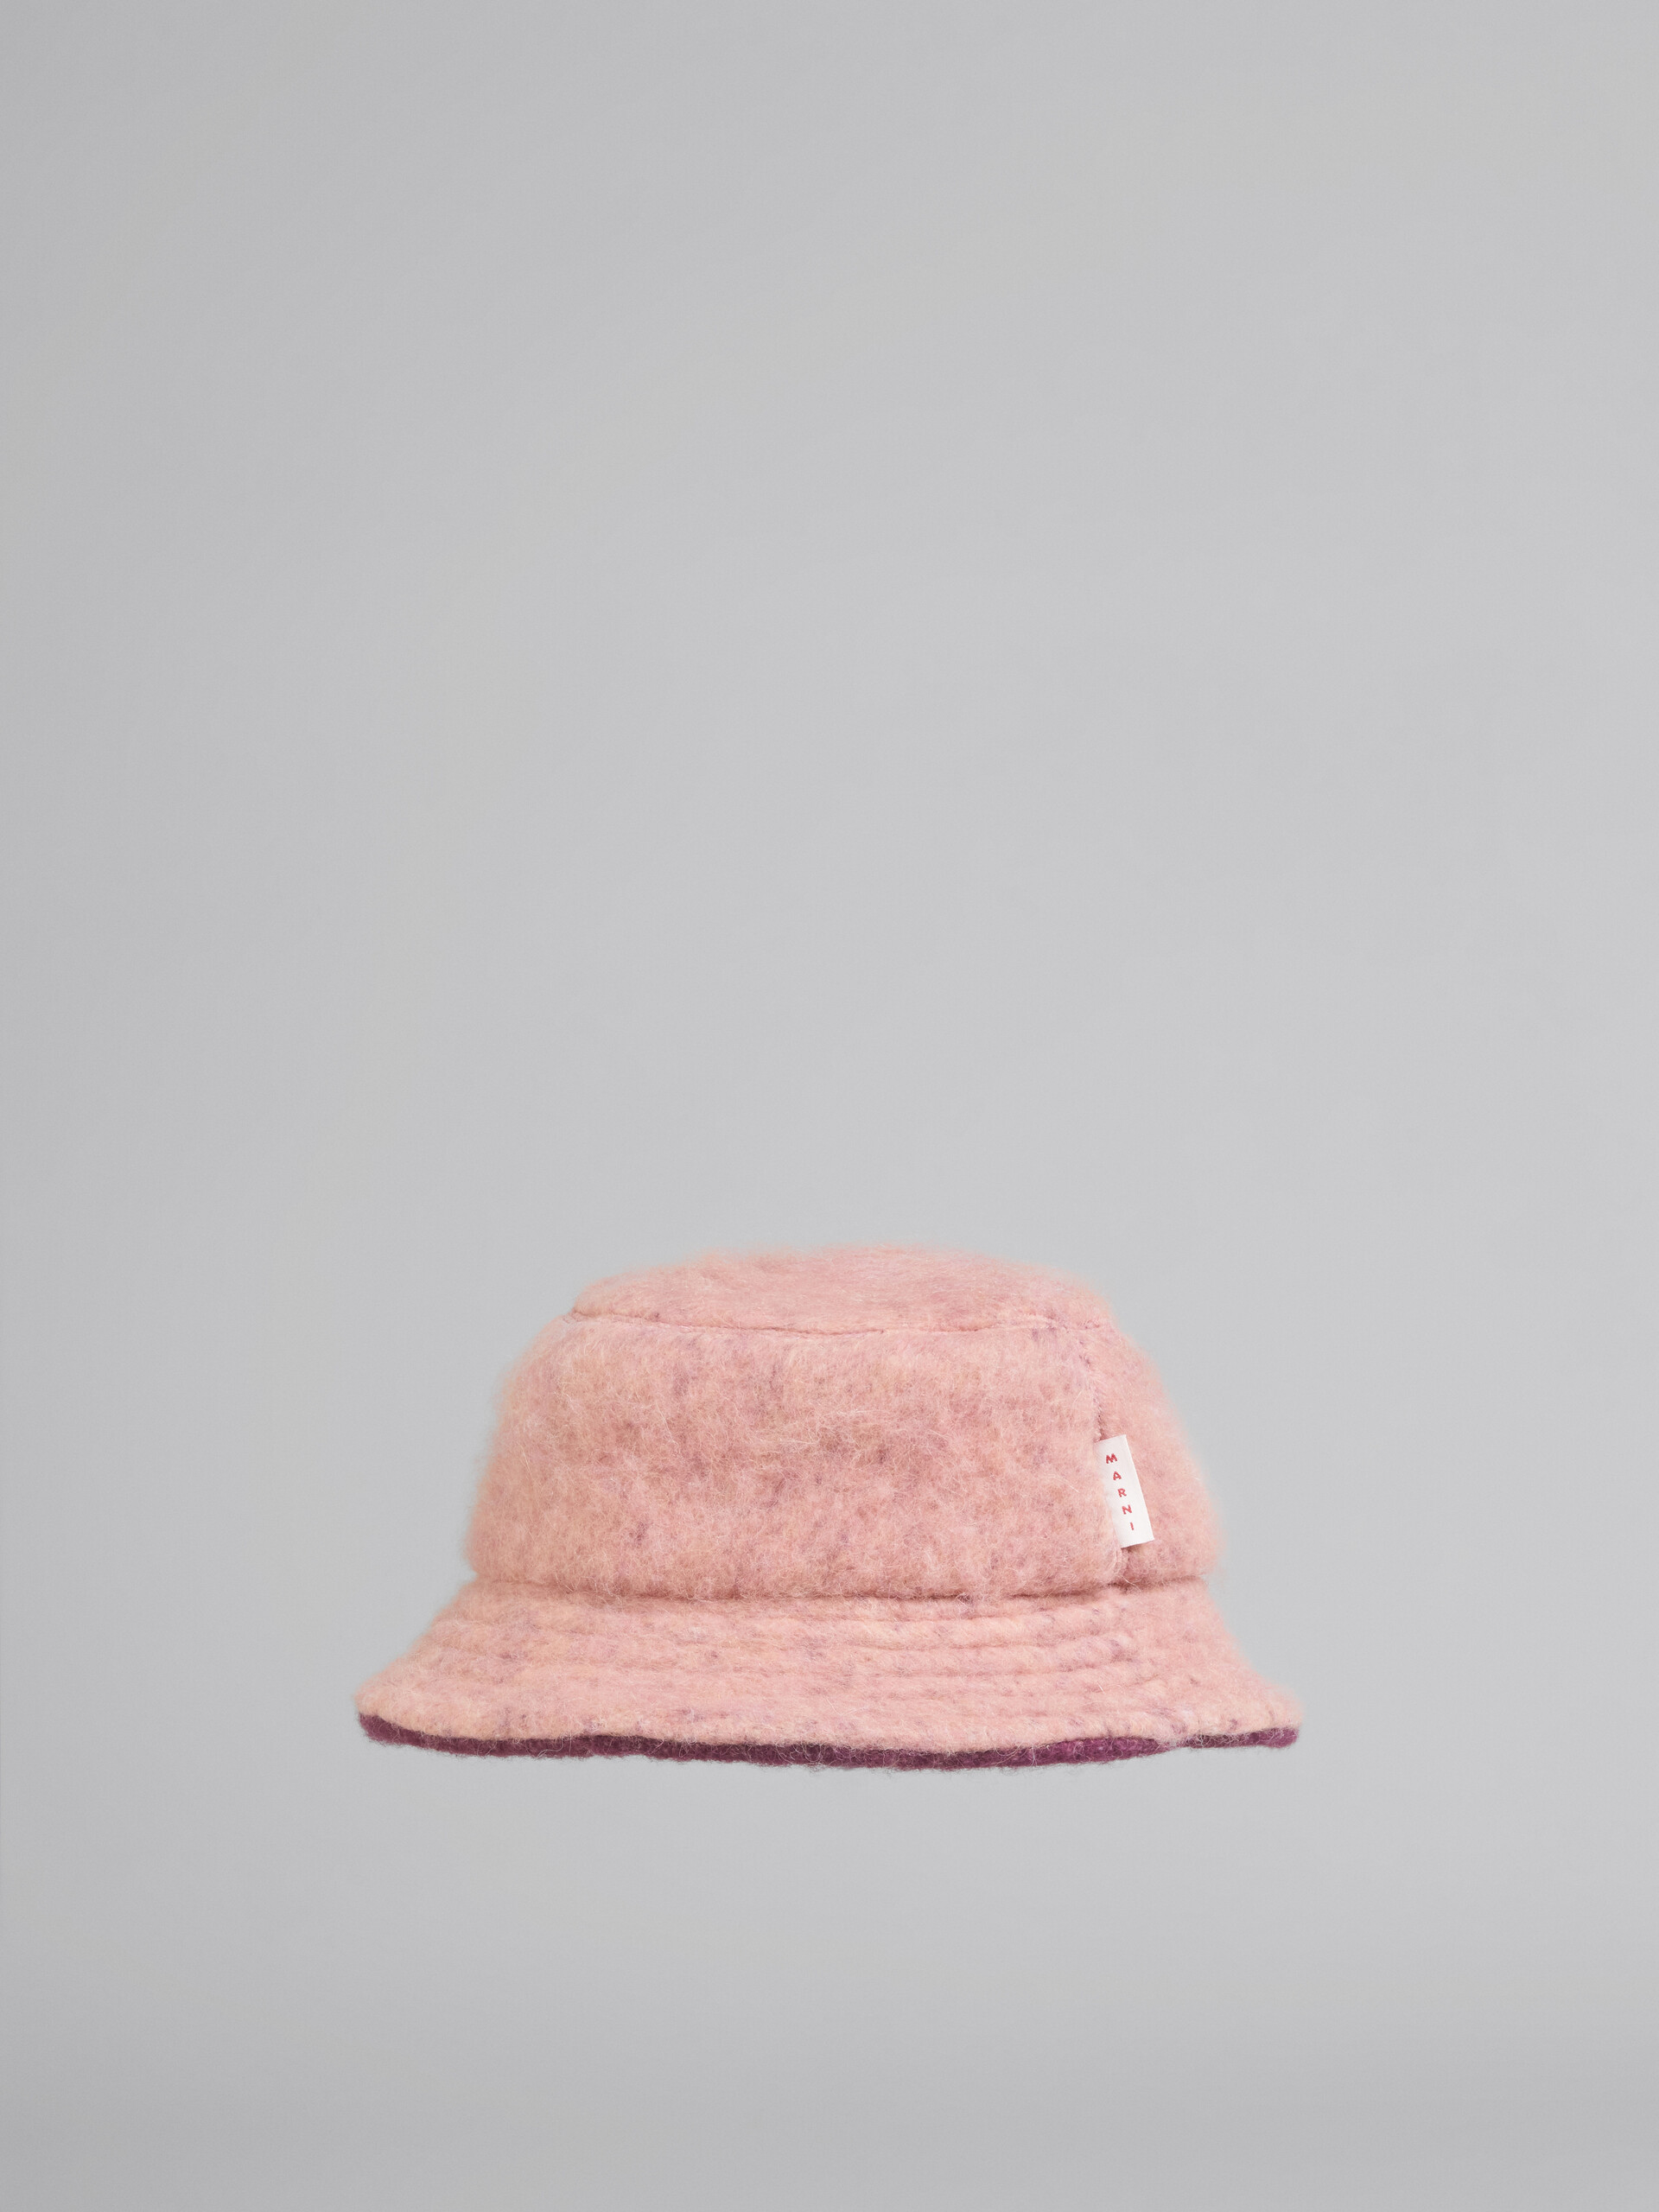 Gorro de pescador de lana cepillada rosa - Sombrero - Image 3